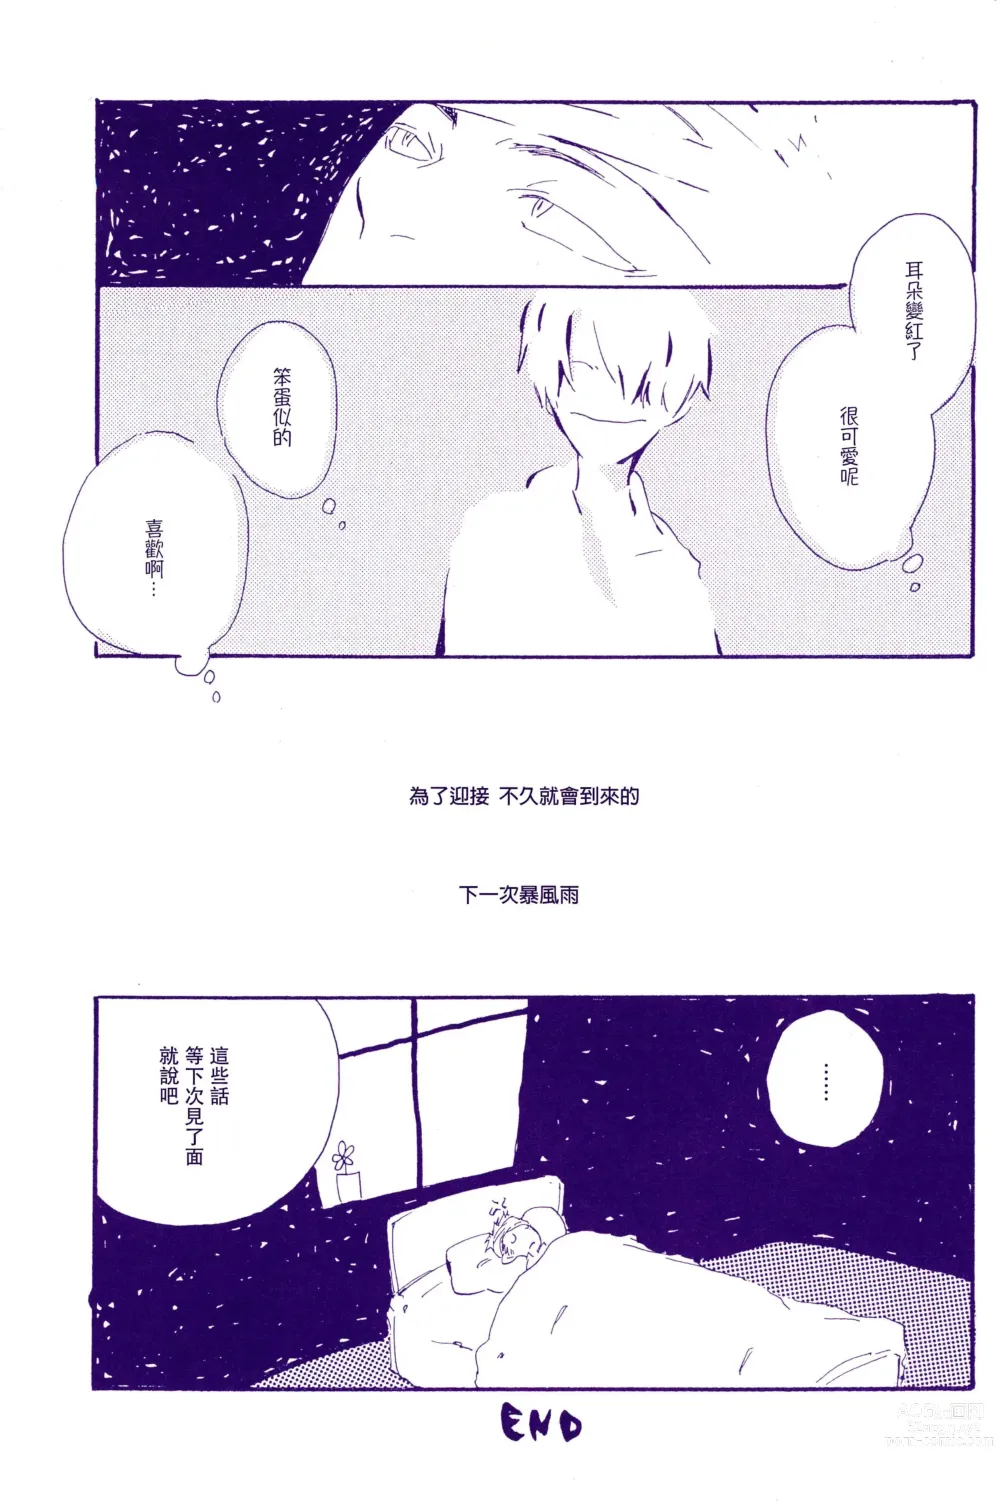 Page 39 of doujinshi 在暴风雨的夜晚 2